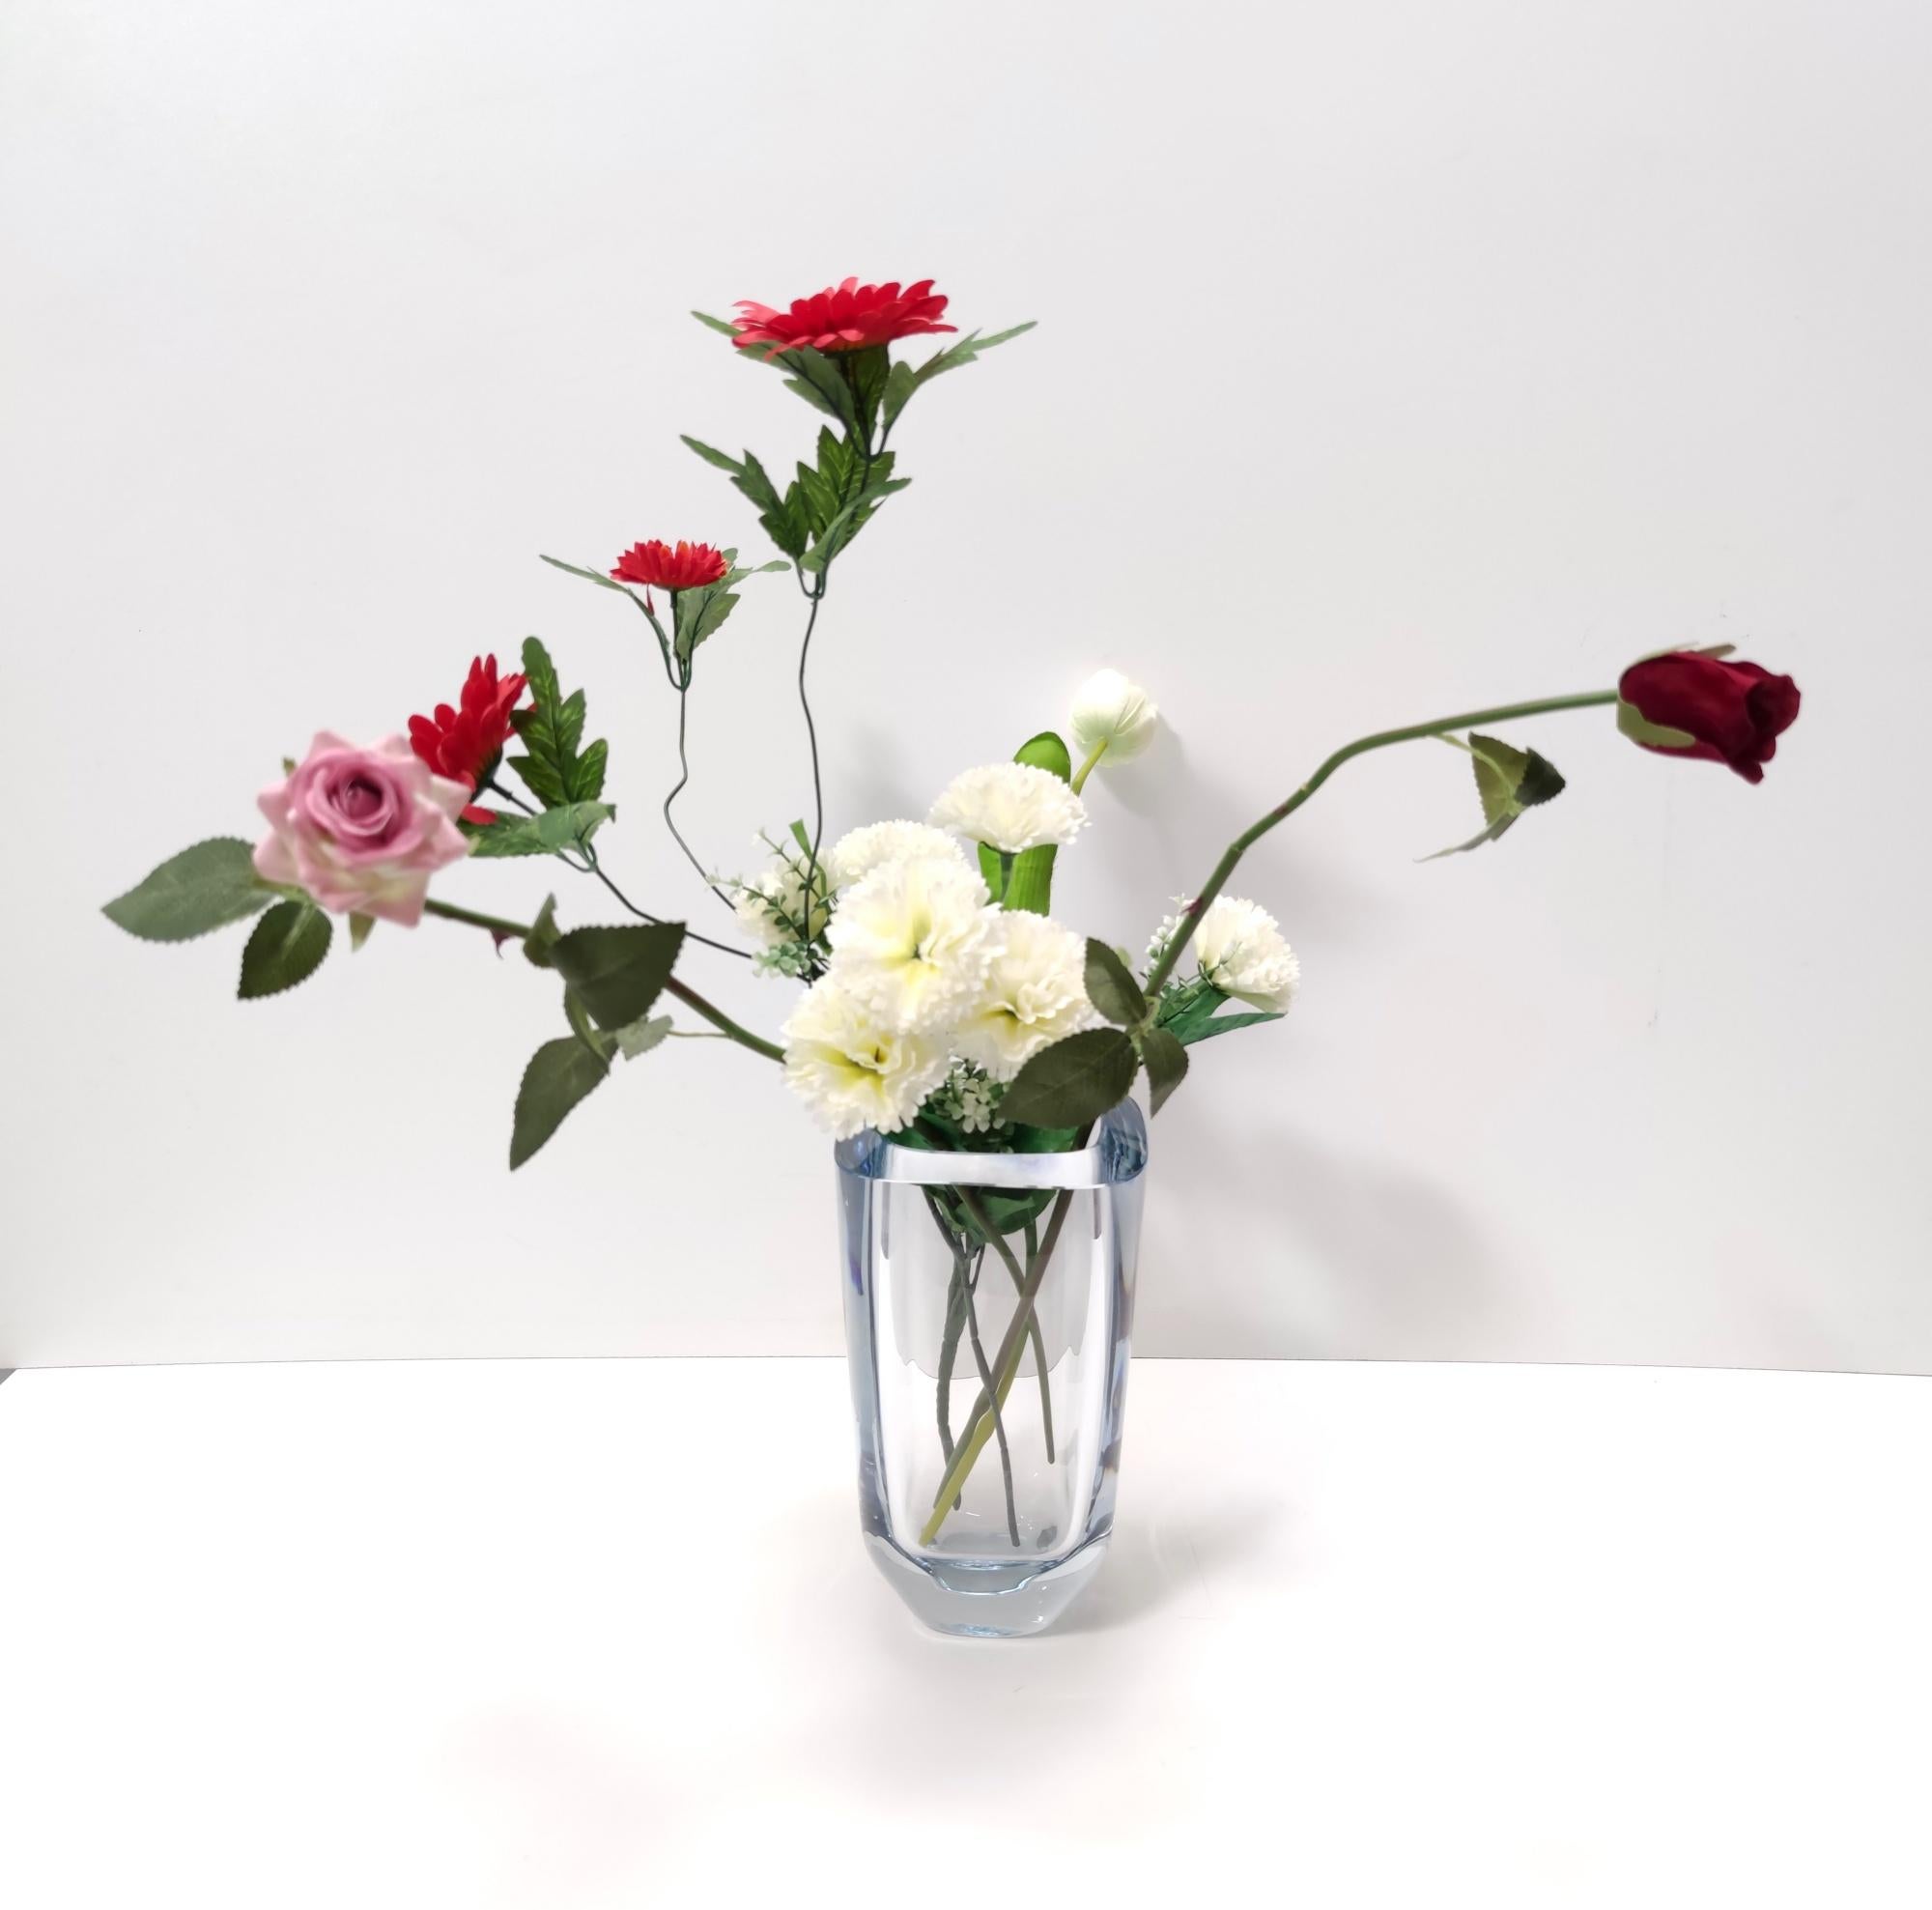 Hergestellt in Schweden, 1960er Jahre.
Diese Vase wurde von Strombergshyttan entworfen.
Sie ist aus 2,5 mm dickem, transparentem Glas gefertigt.
Es handelt sich um ein Vintage-Stück, daher kann es leichte Gebrauchsspuren aufweisen, ist aber in einem